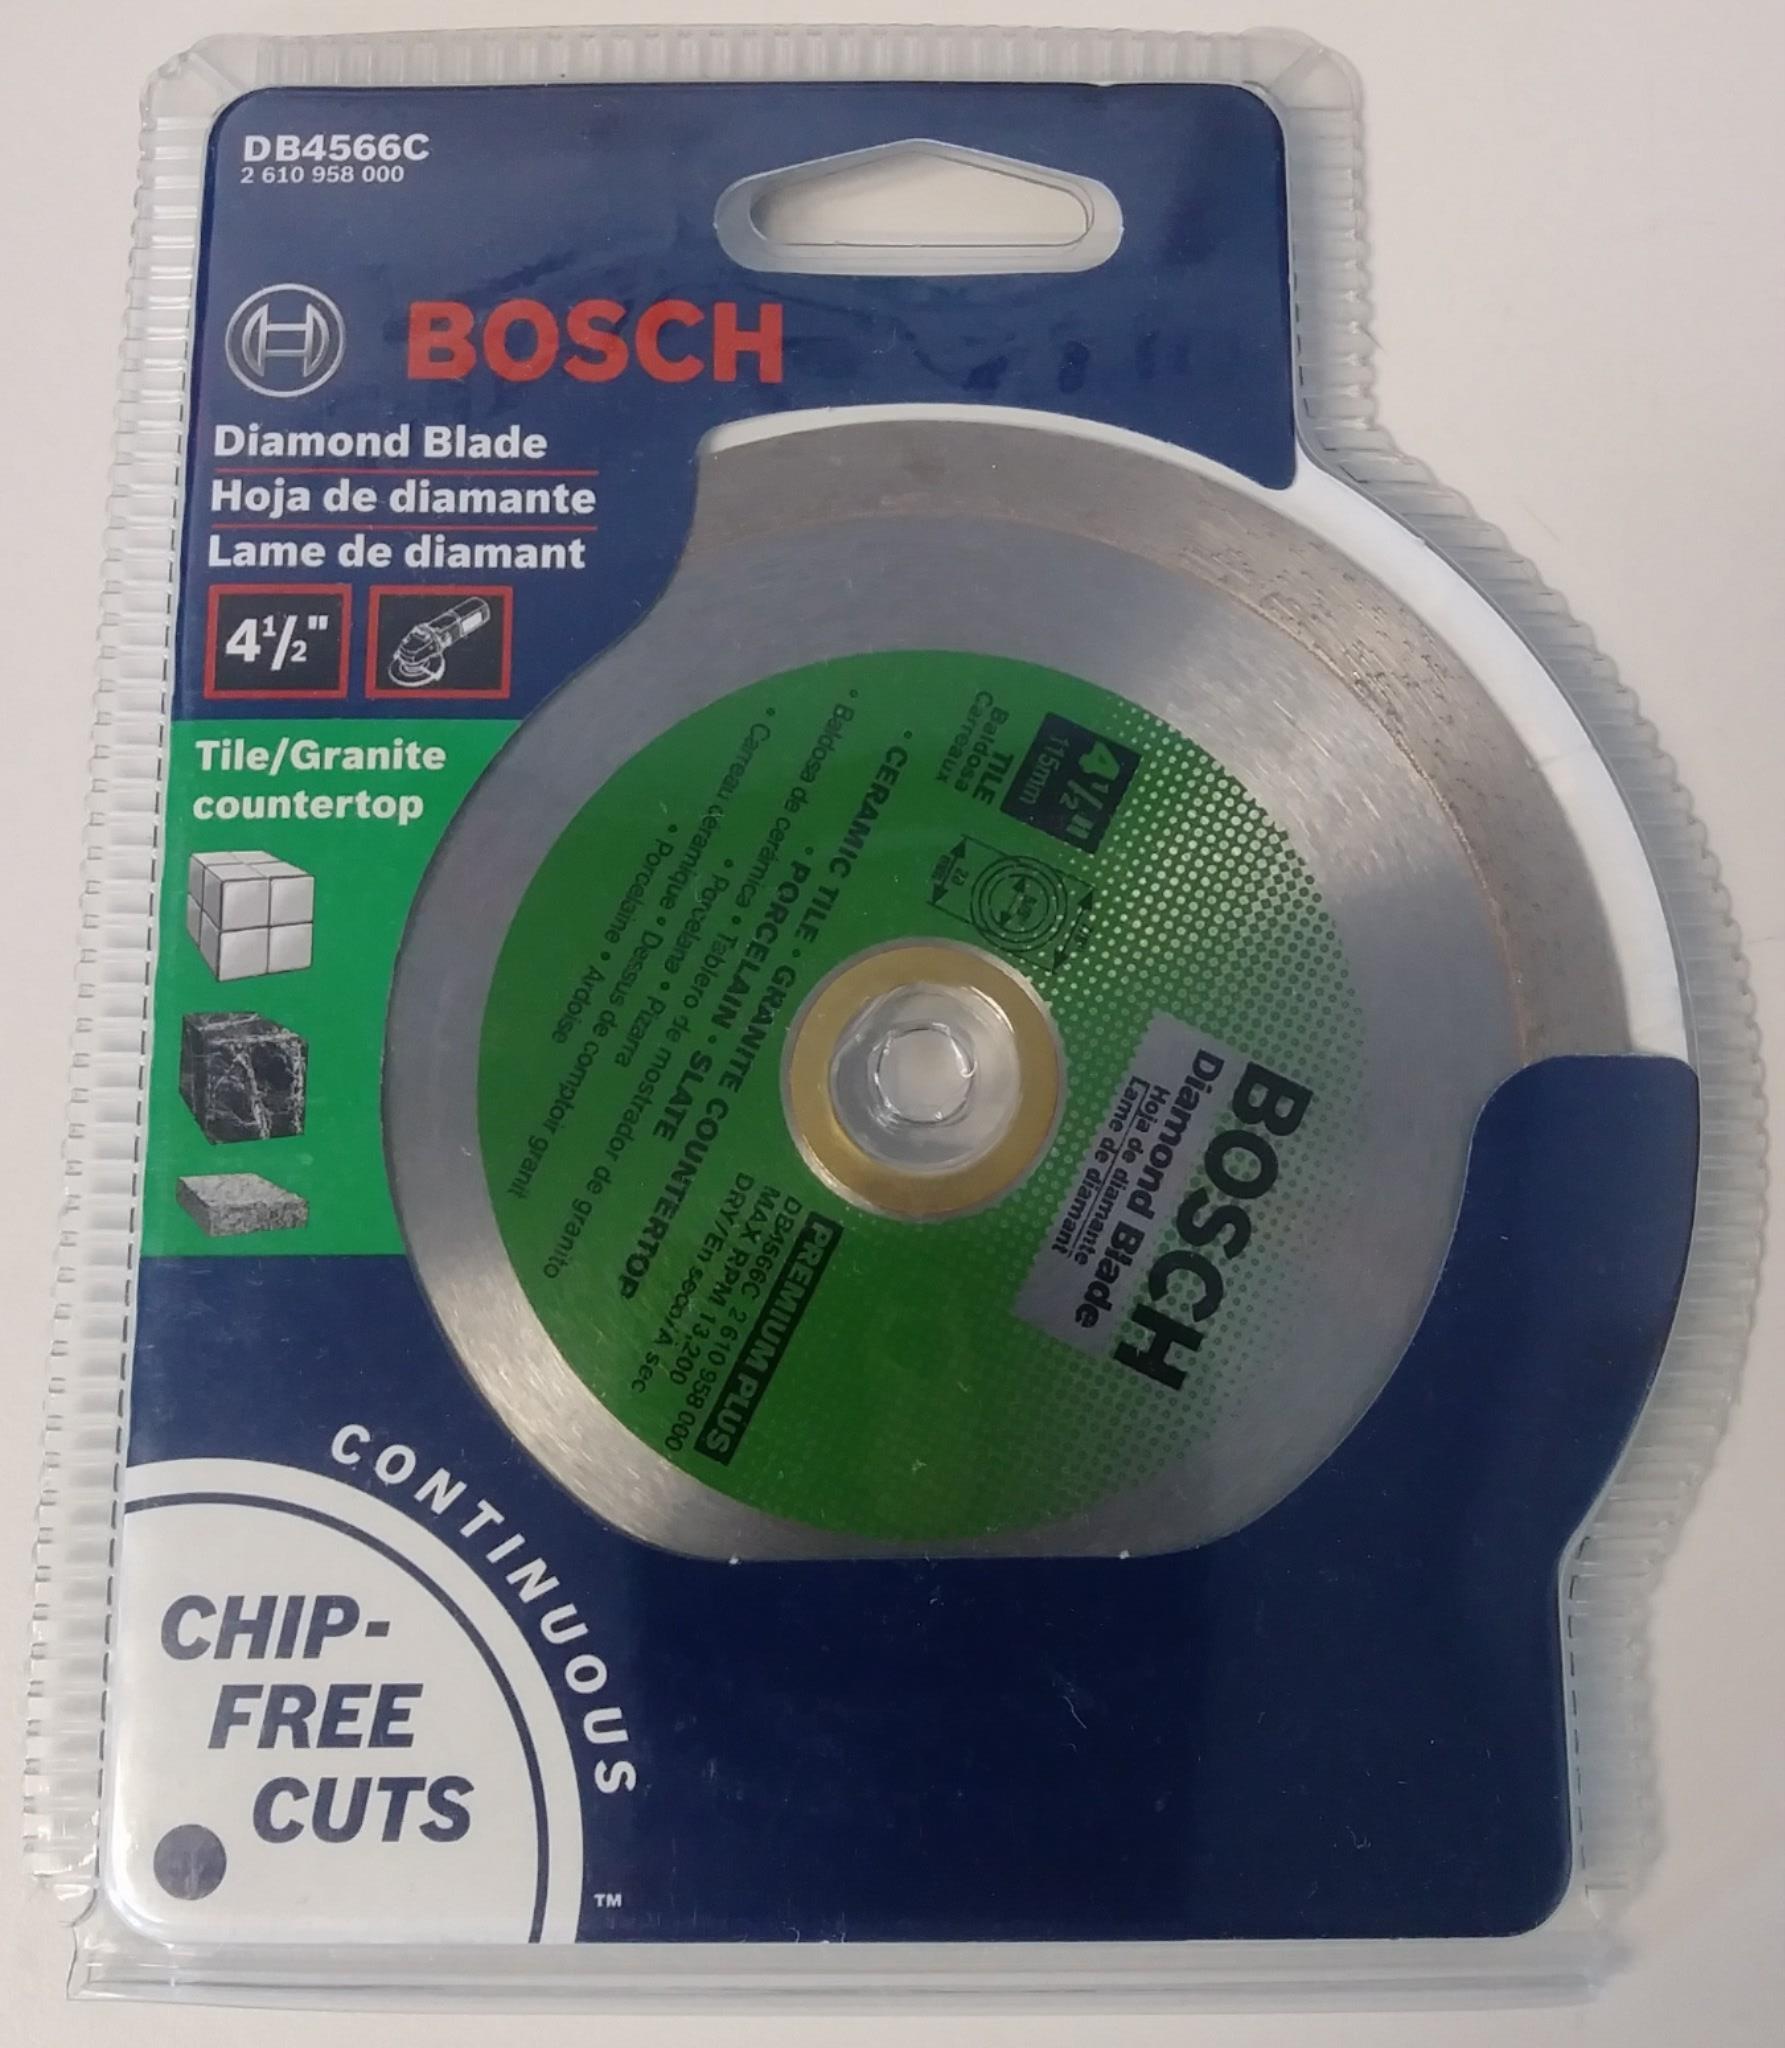 Bosch DB4566C 4-1/2" Premium Plus Continuous Rim Diamond Blade